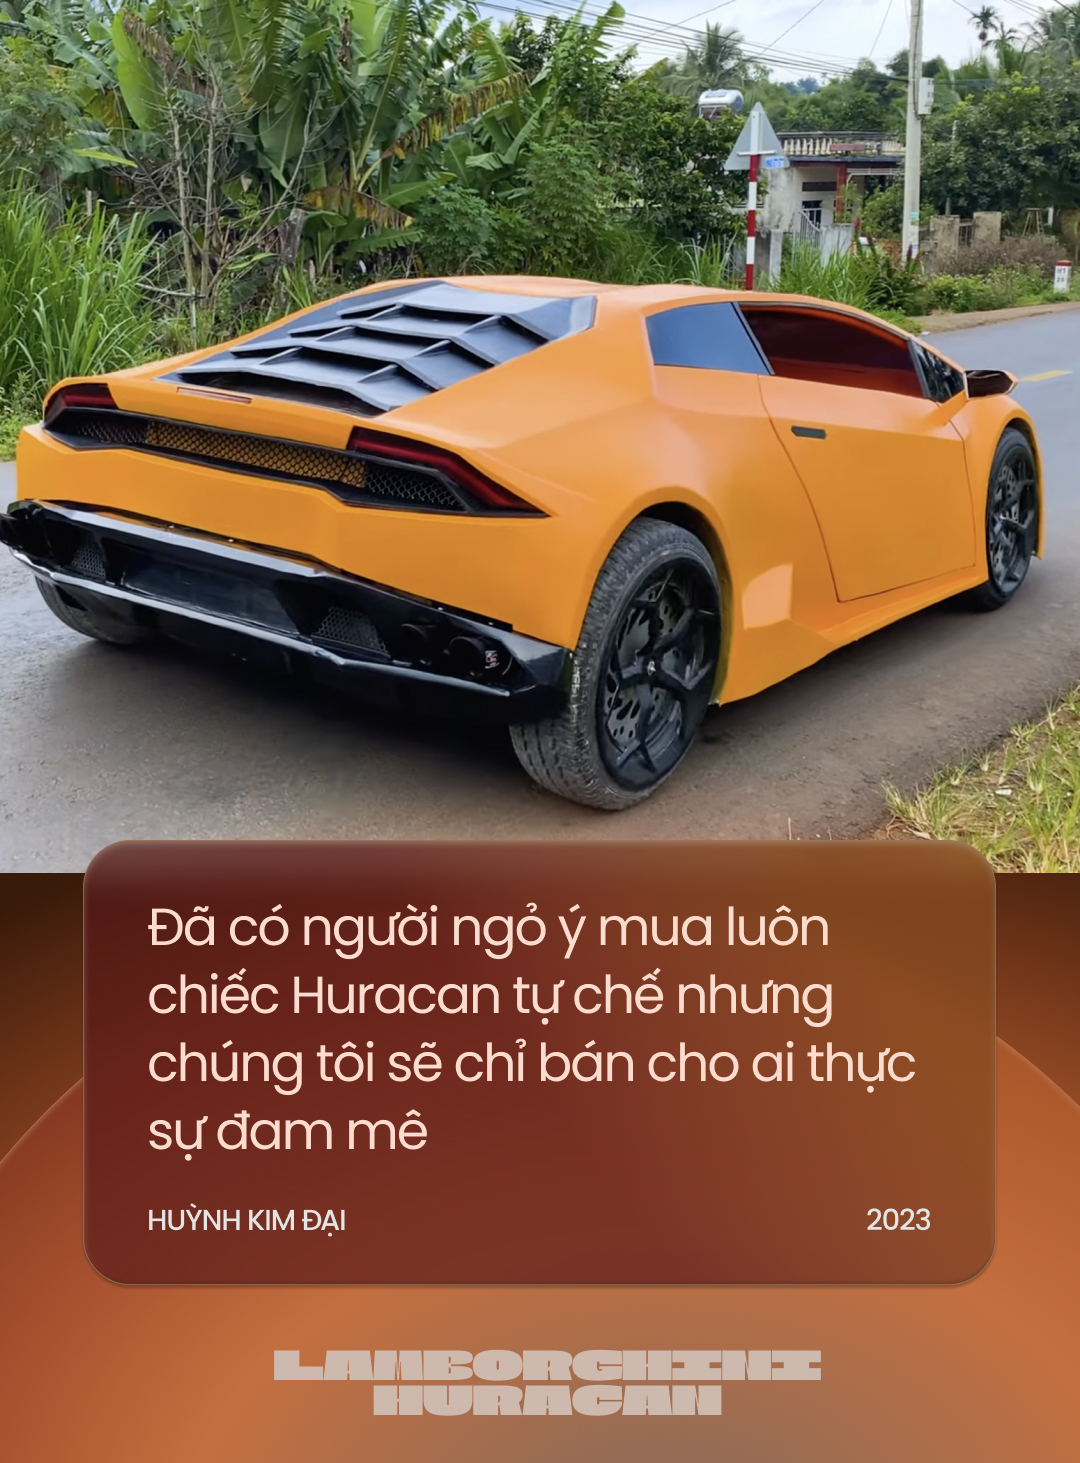 Đôi bạn Tây Nguyên tự chế Lamborghini Huracan khiến cộng đồng quốc tế trầm trồ: ‘Năm tới sẽ chuyển mình để độc lạ nhất Việt Nam’ - Ảnh 9.